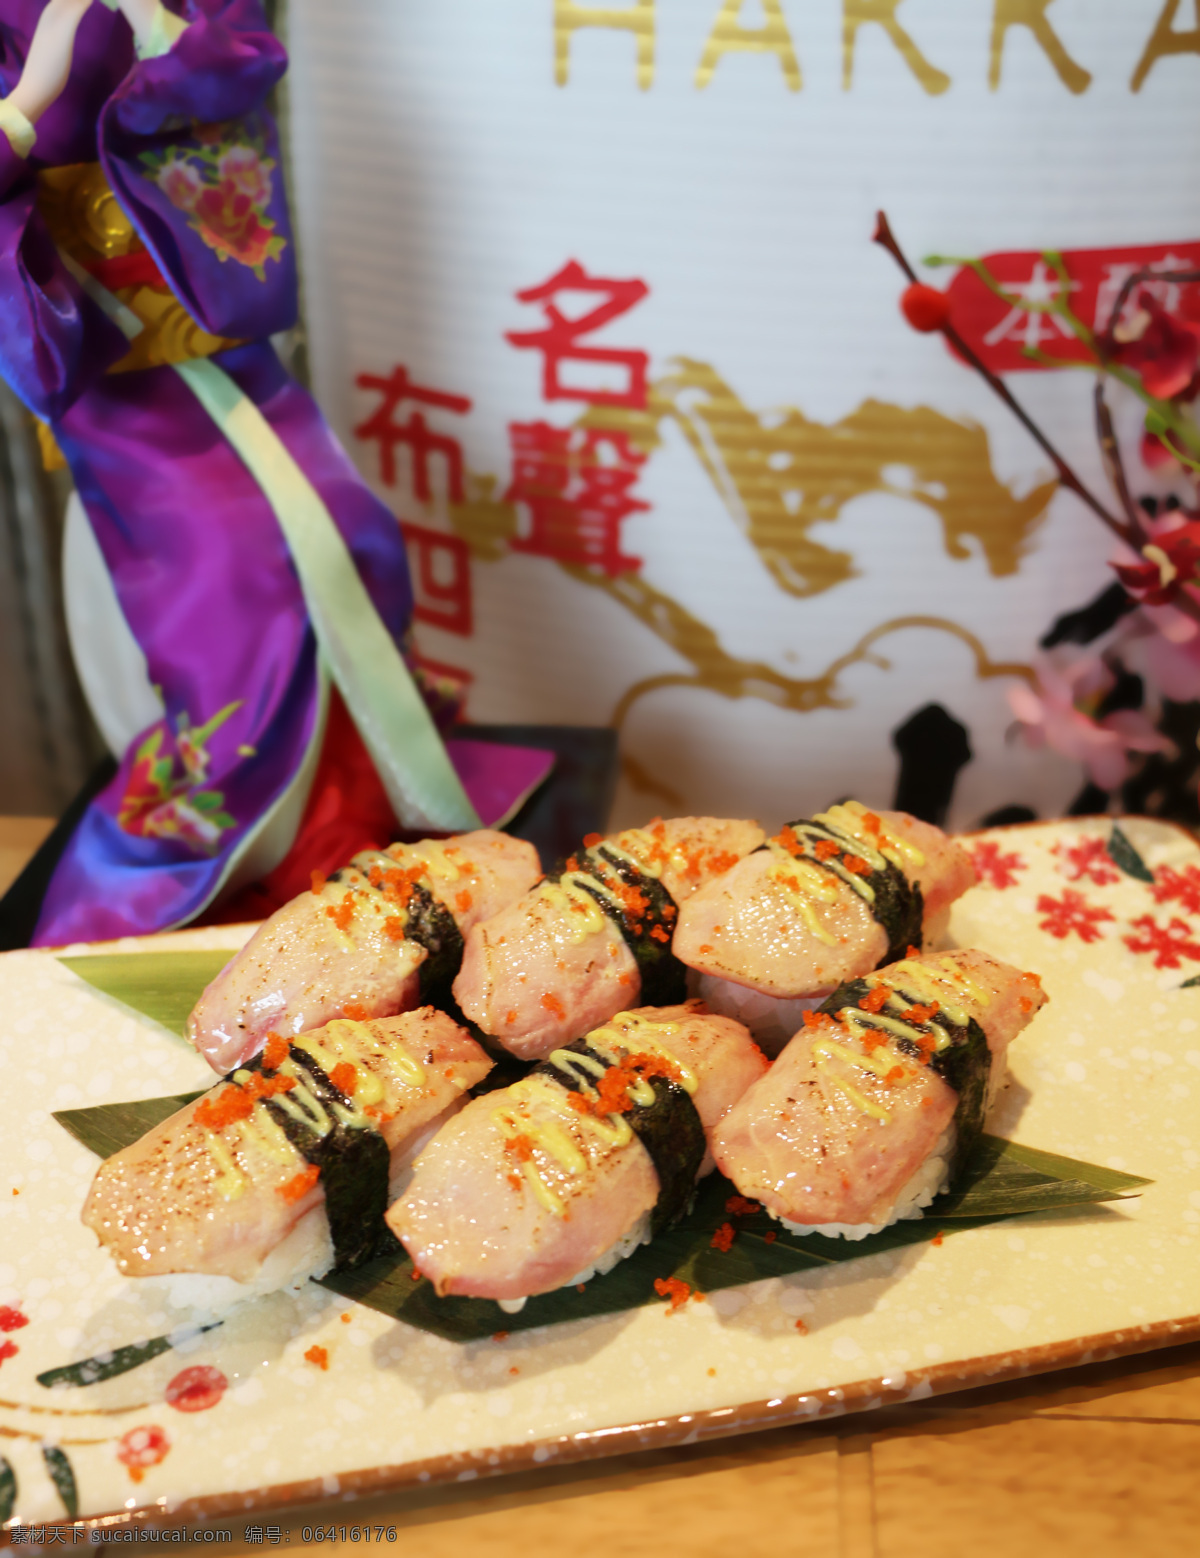 海草军舰寿司 正卷寿司 反卷寿司 金枪鱼寿司 希鲮鱼手握 肉松寿司 餐饮美食 西餐美食